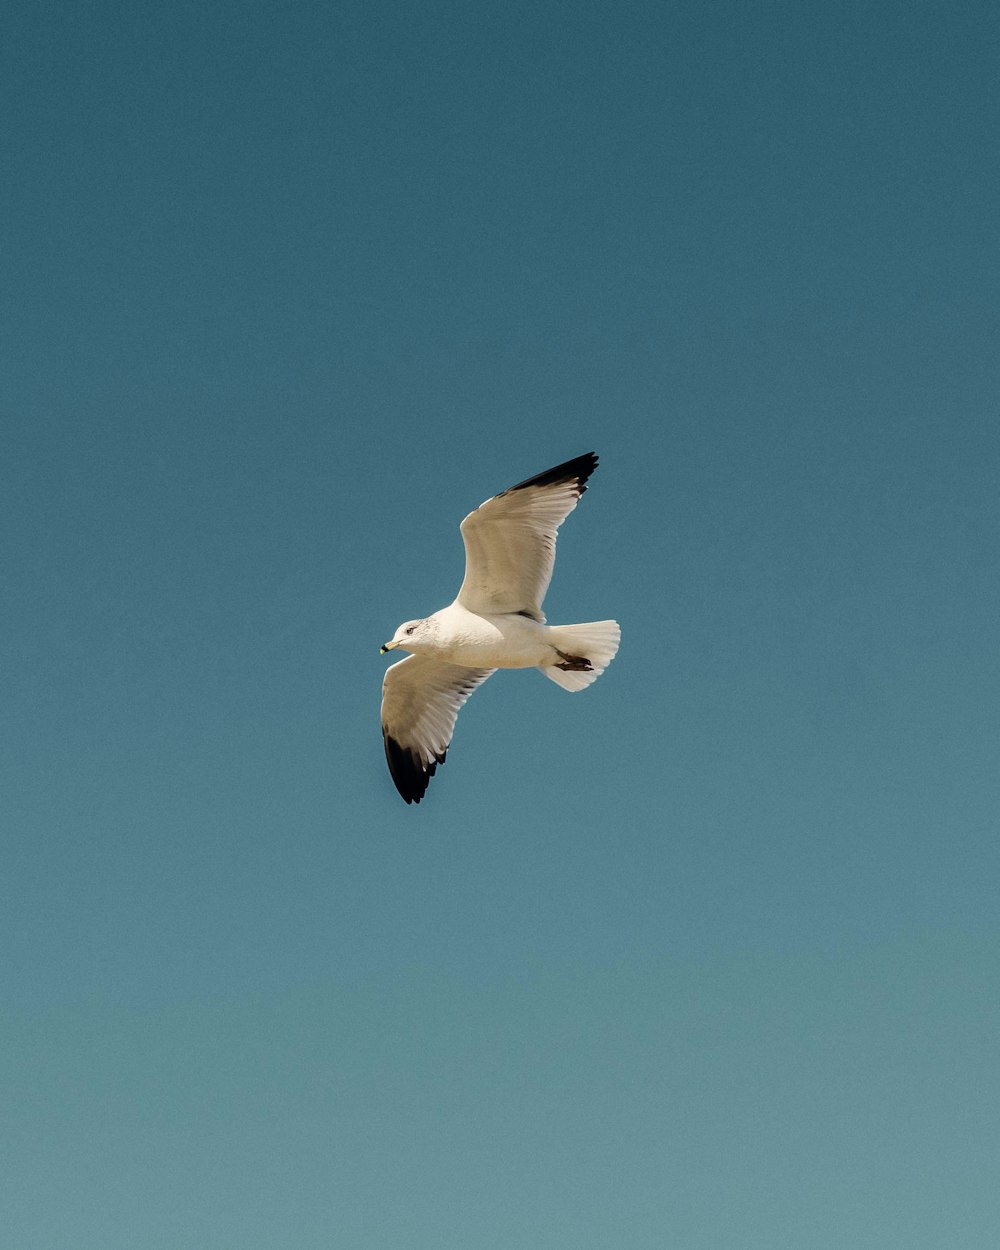 pájaro blanco y negro volando bajo el cielo azul durante el día